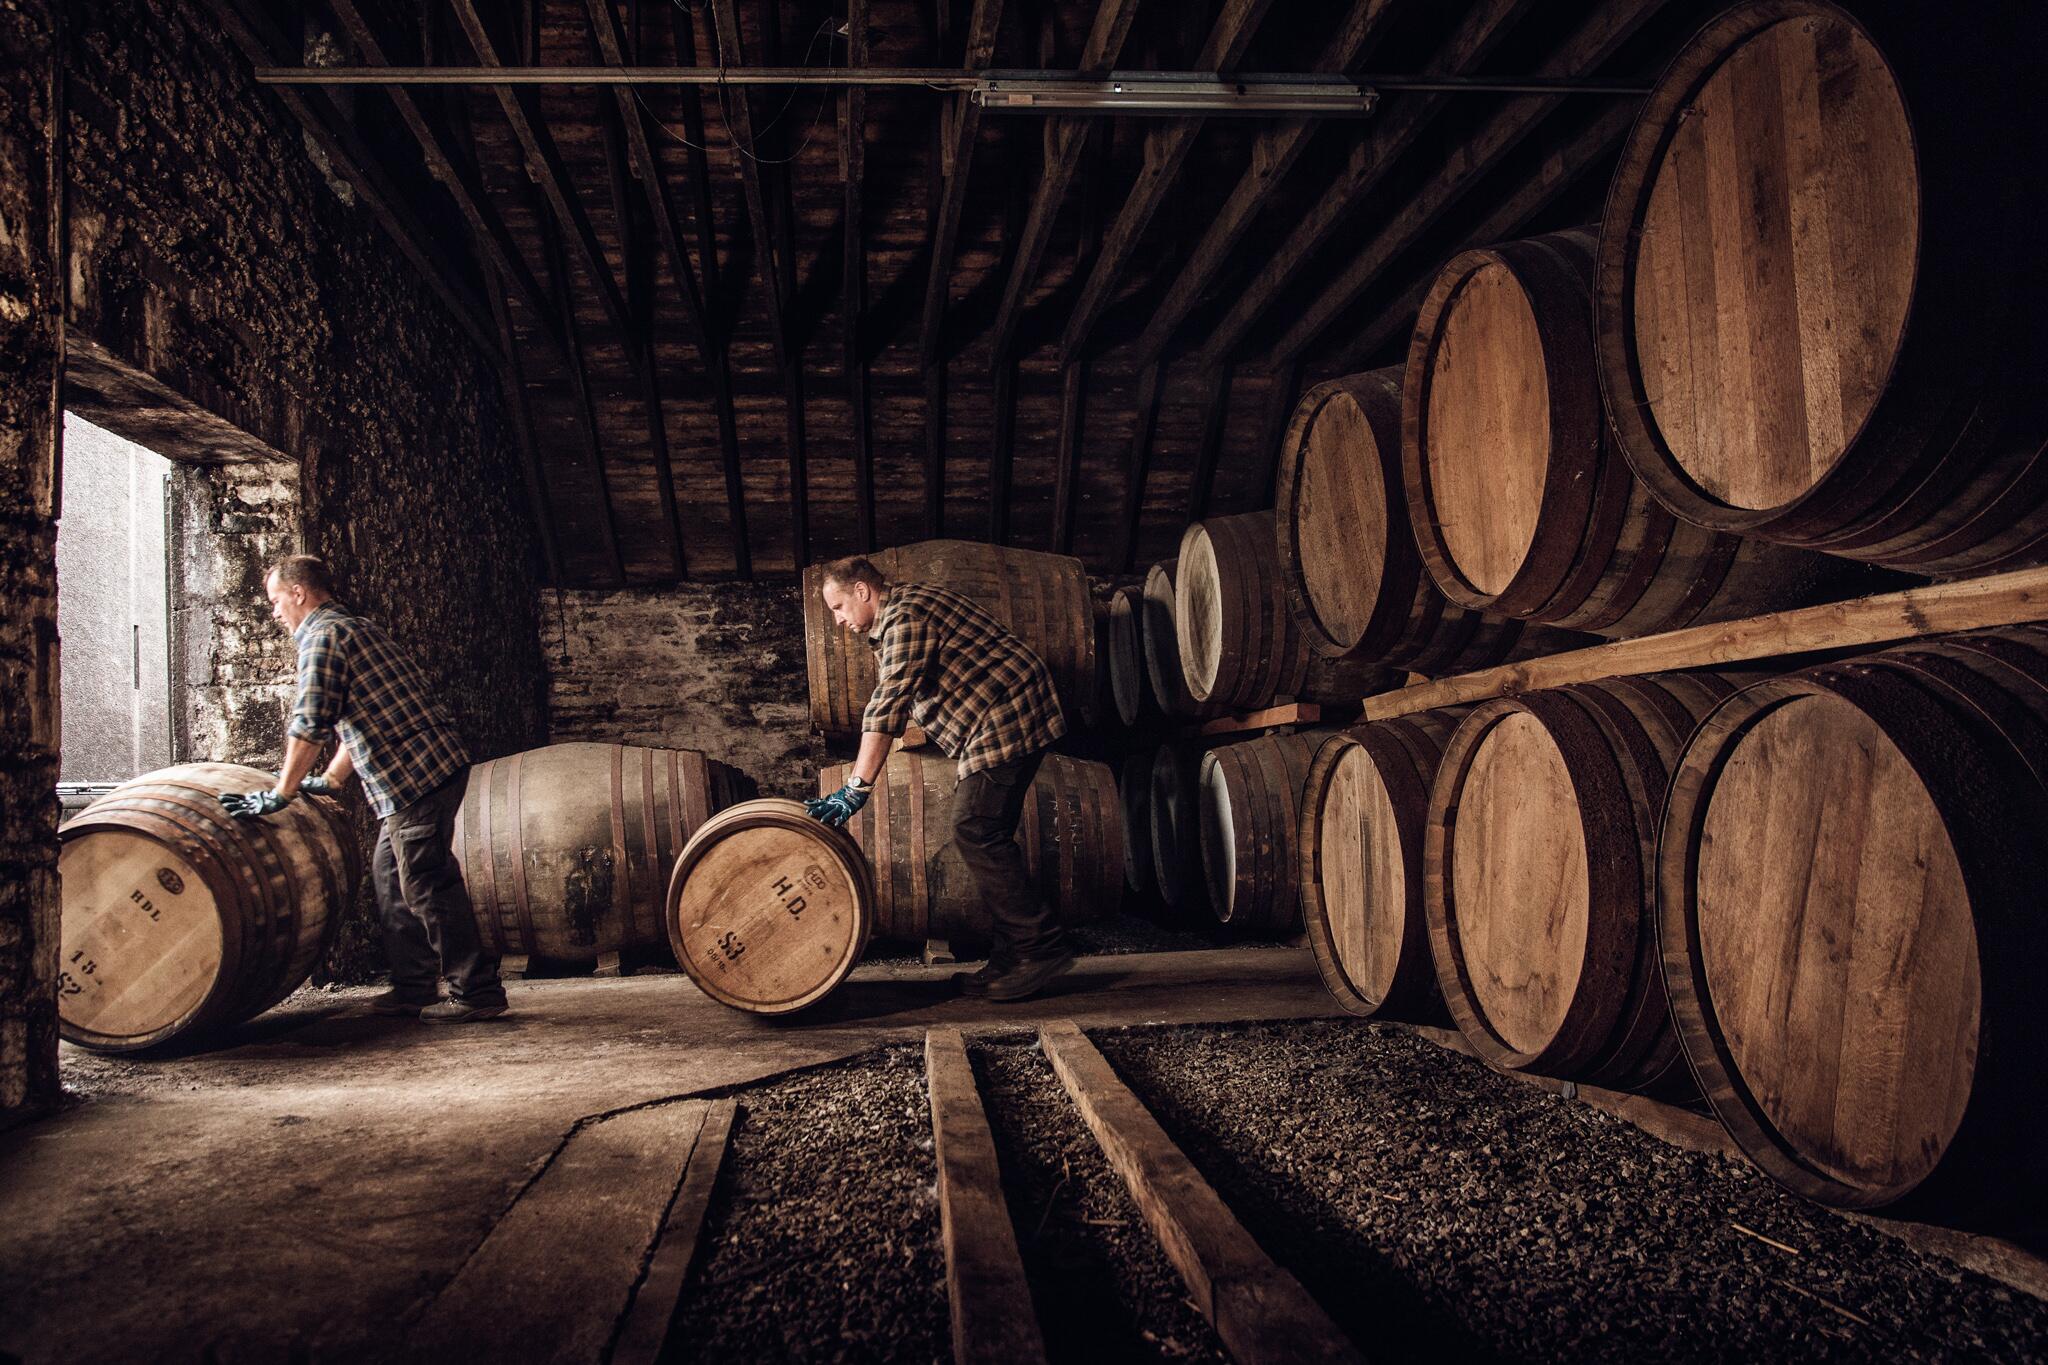 whiskey distilleries to visit scotland